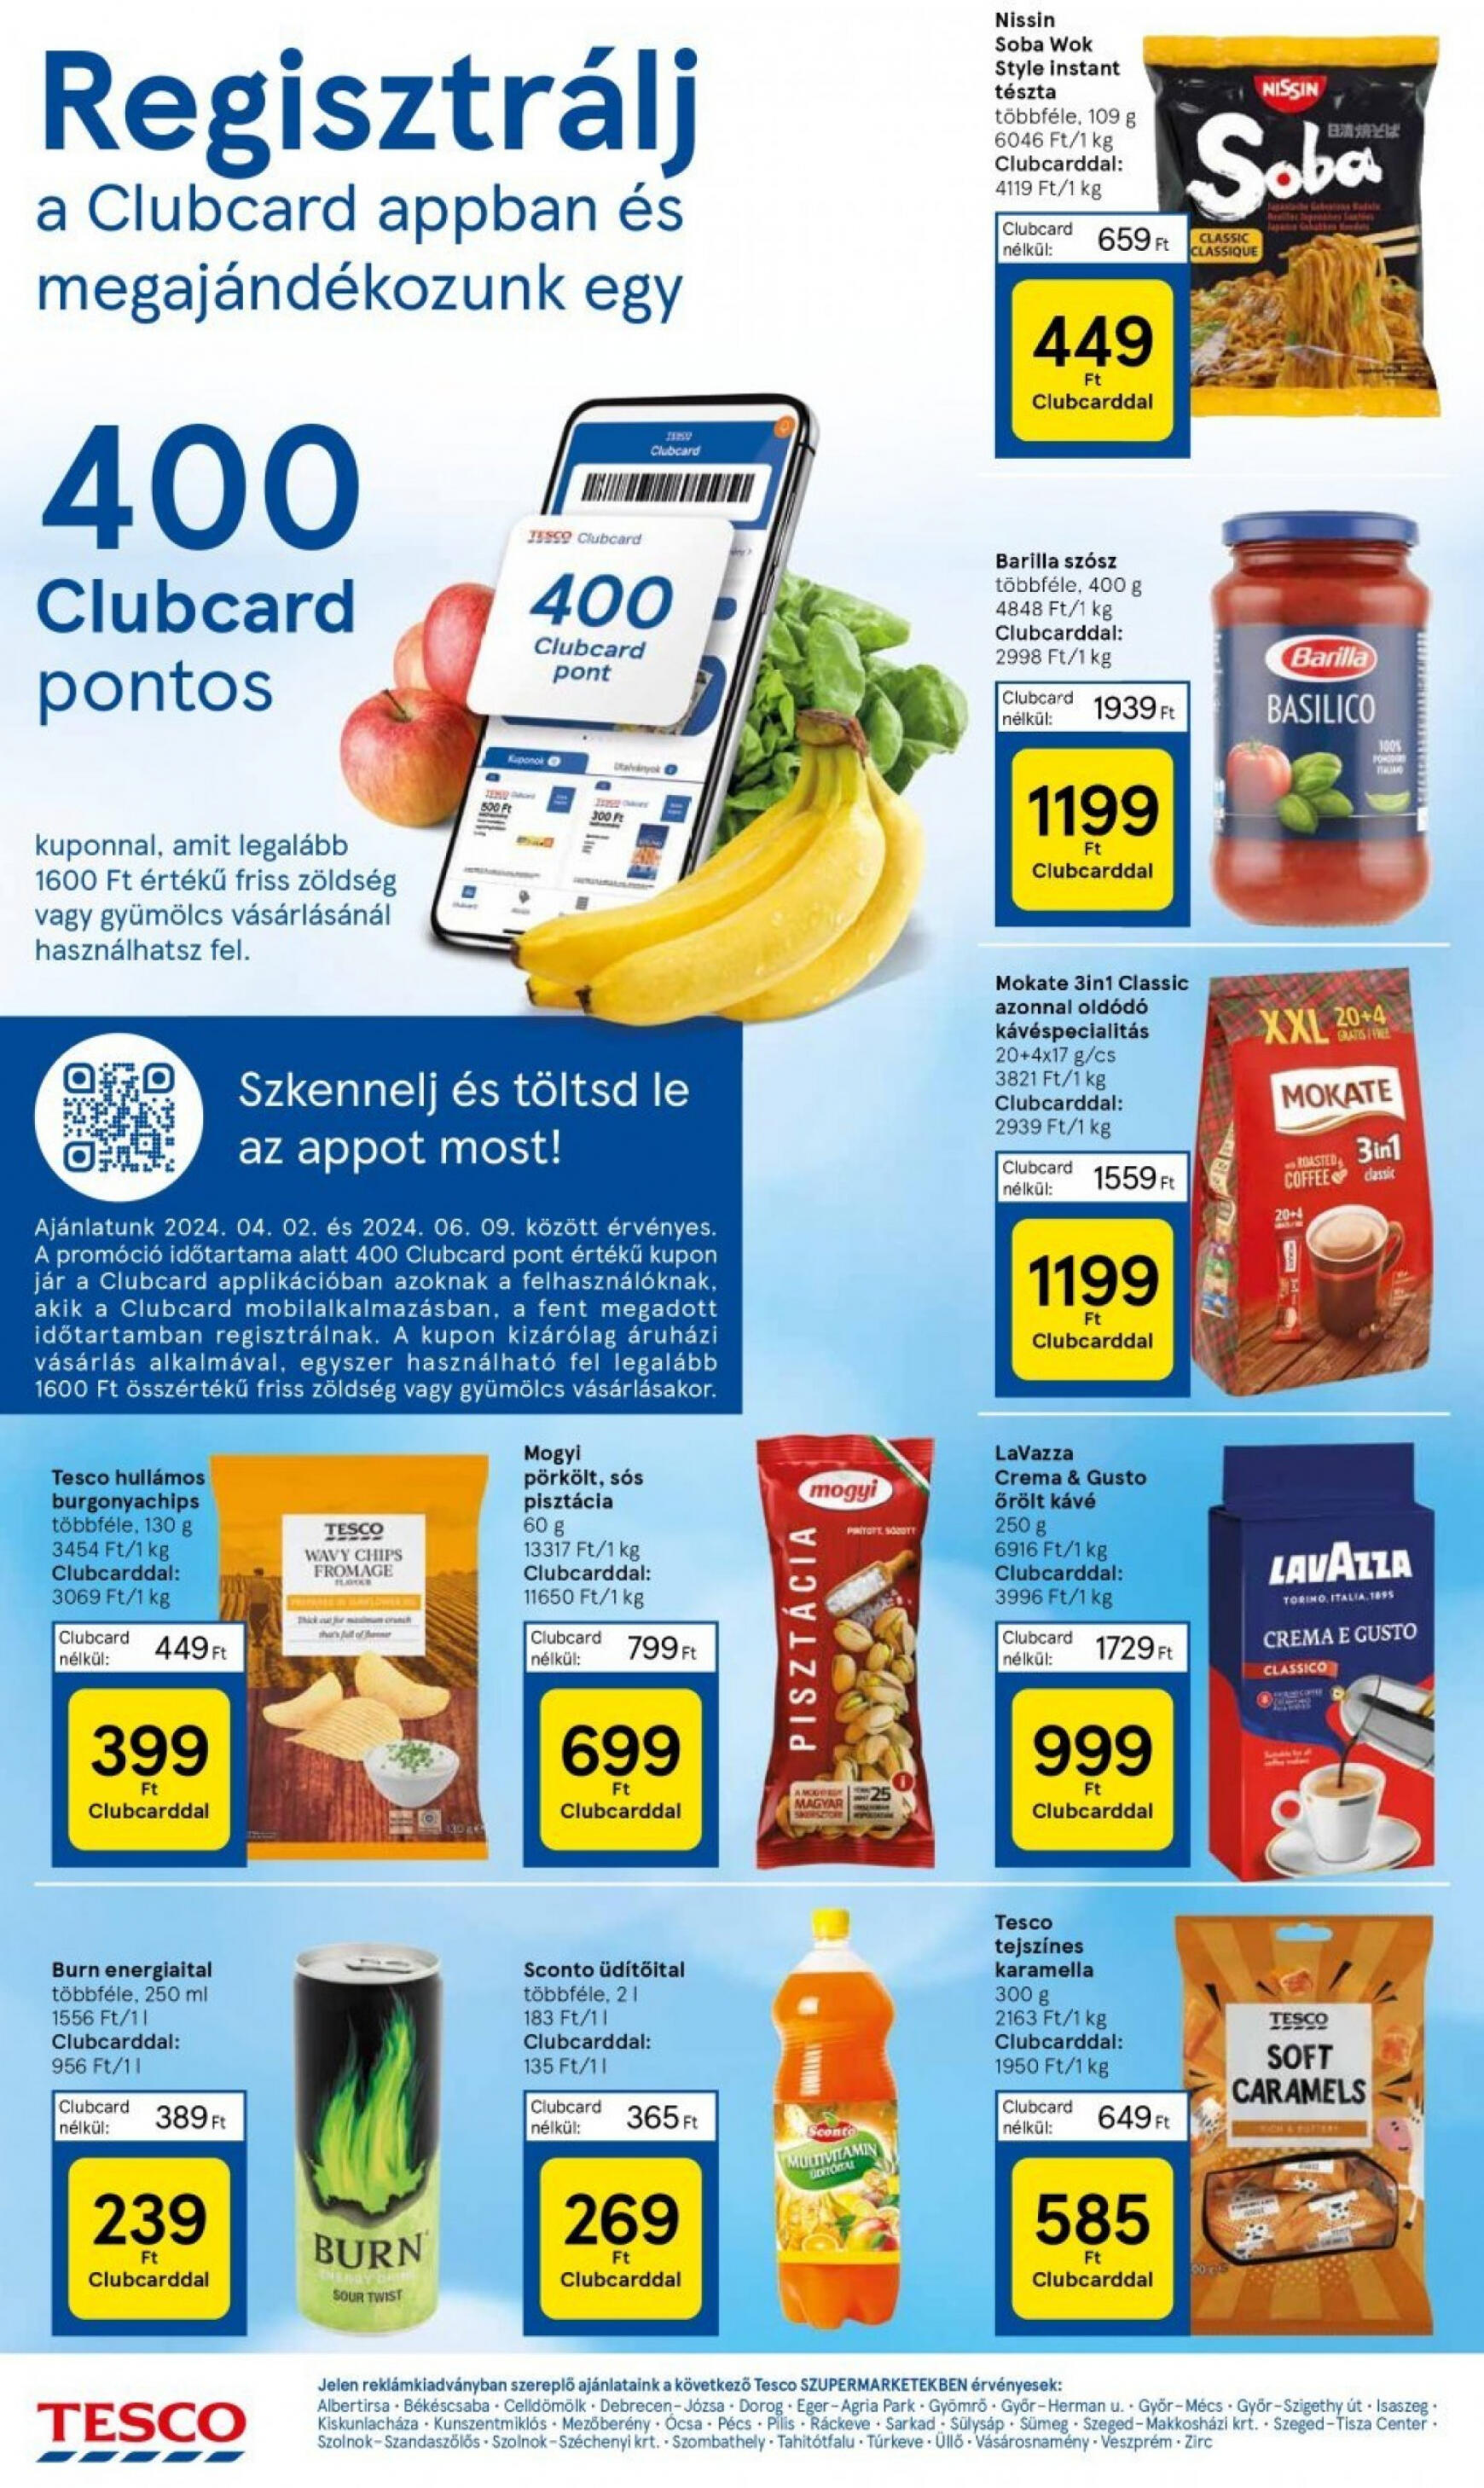 tesco - Aktuális újság Tesco szupermarket 04.18. - 04.24. - page: 6